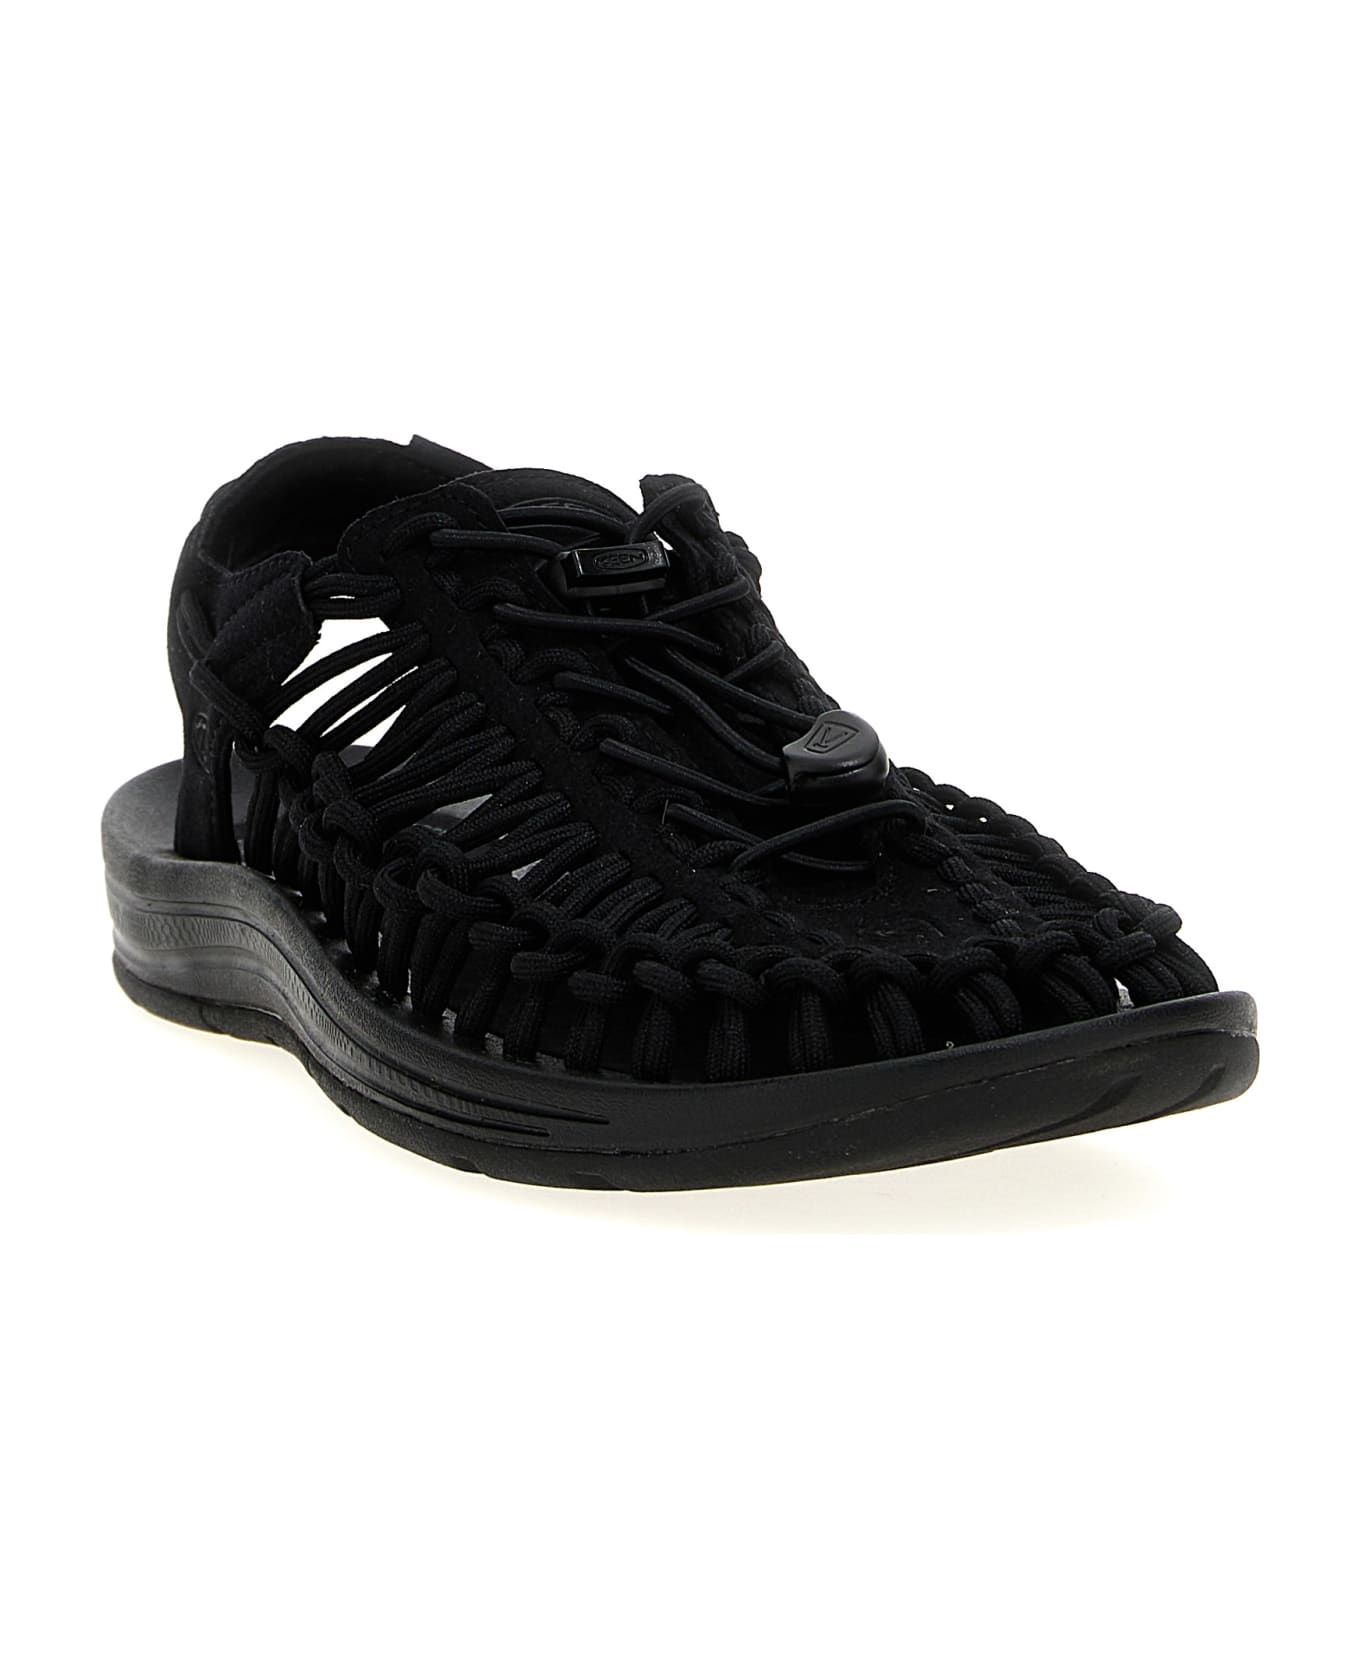 Keen 'uneek' Sneakers - Black/black